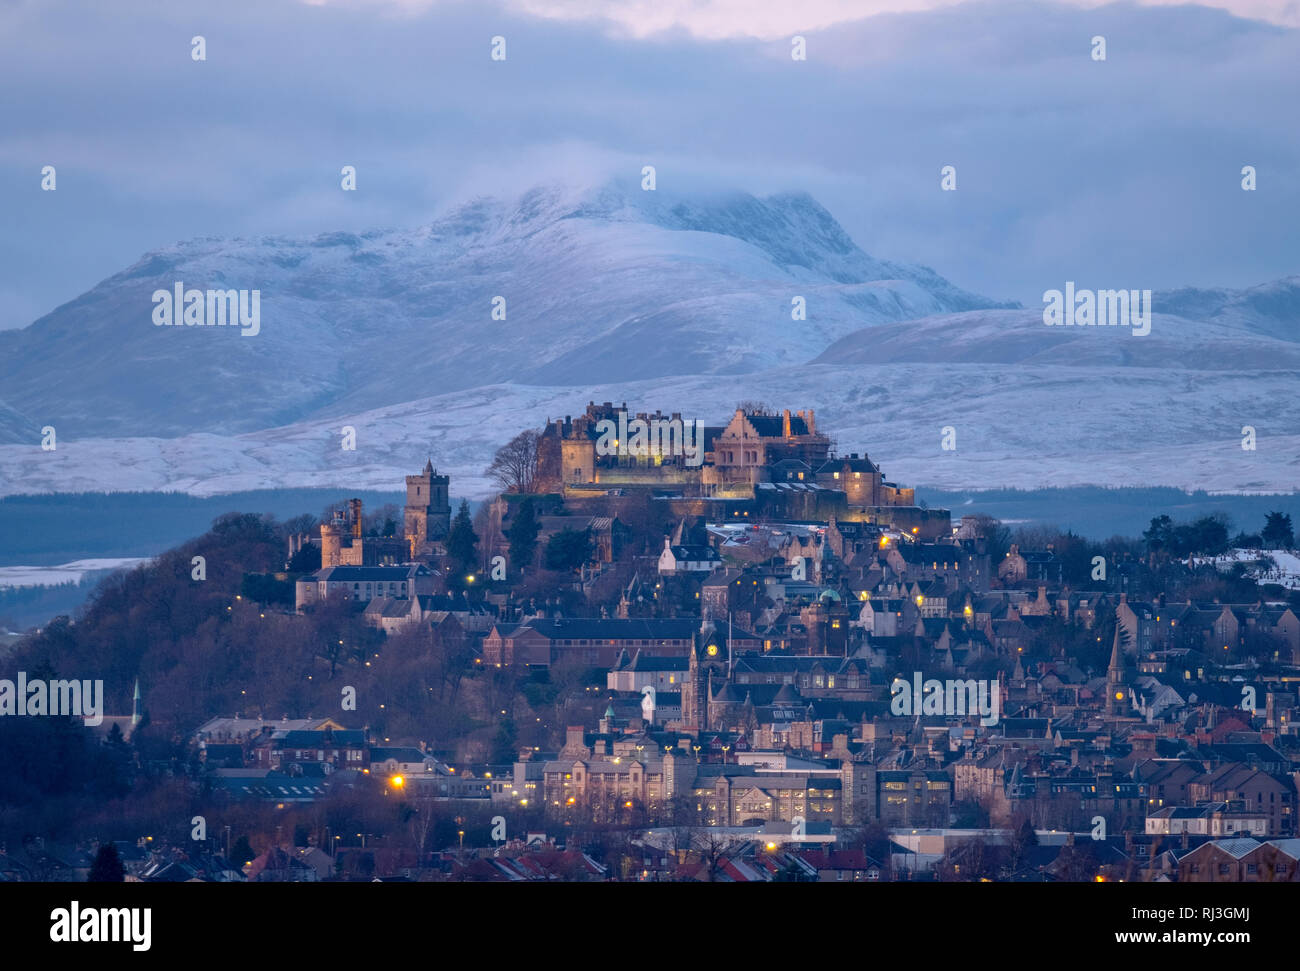 Le Château de Stirling et ville de Stirling au crépuscule avec la montagne enneigée (Stuc a Chroin ) à distance Banque D'Images